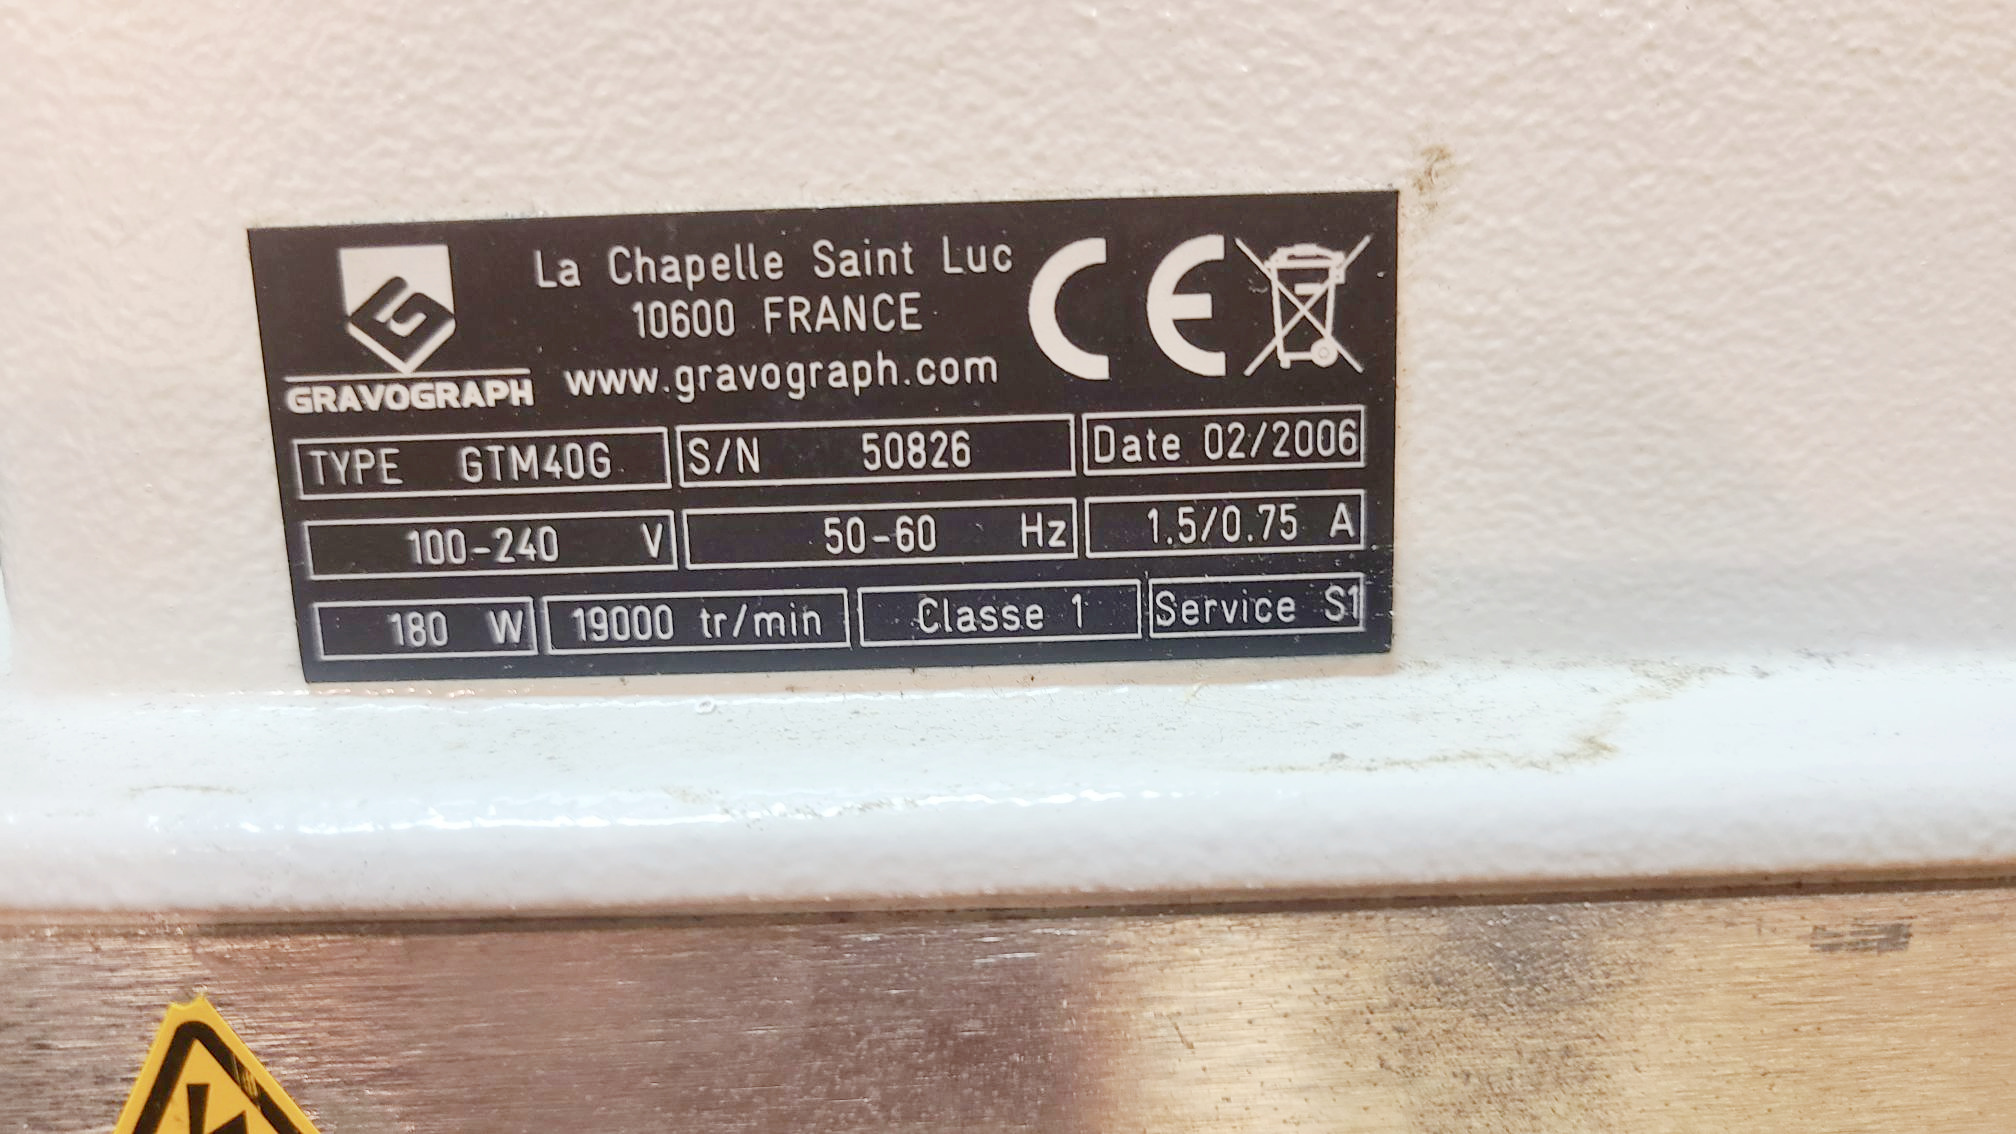 Gravograph GTM40G Engraver (Used) Item # UE-070522A (Connecticut)